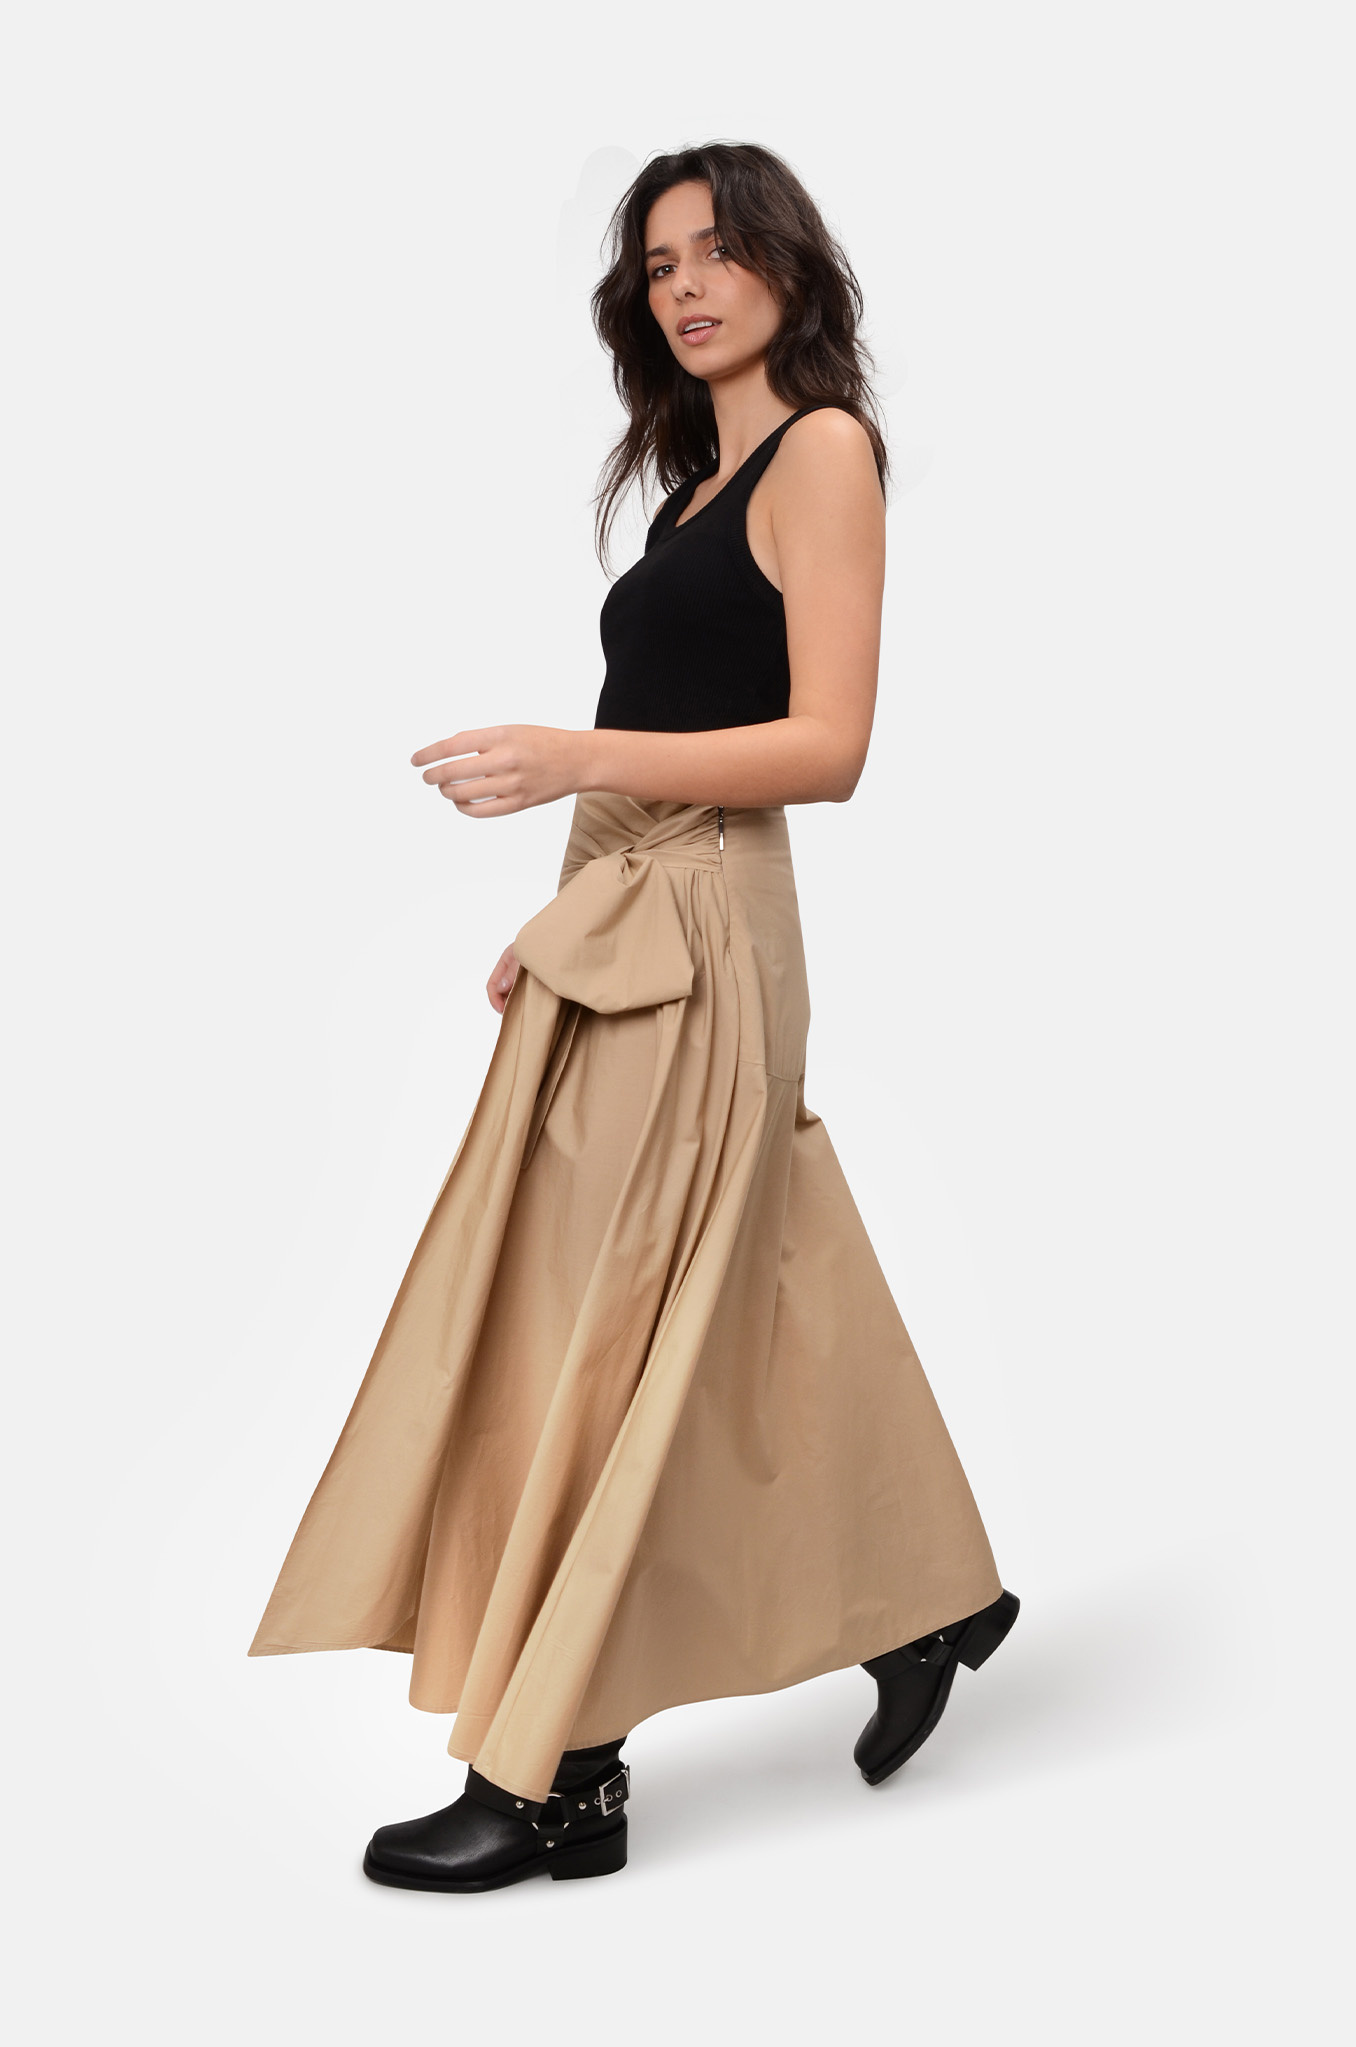 Roomy Poplin Skirt with Bow-2